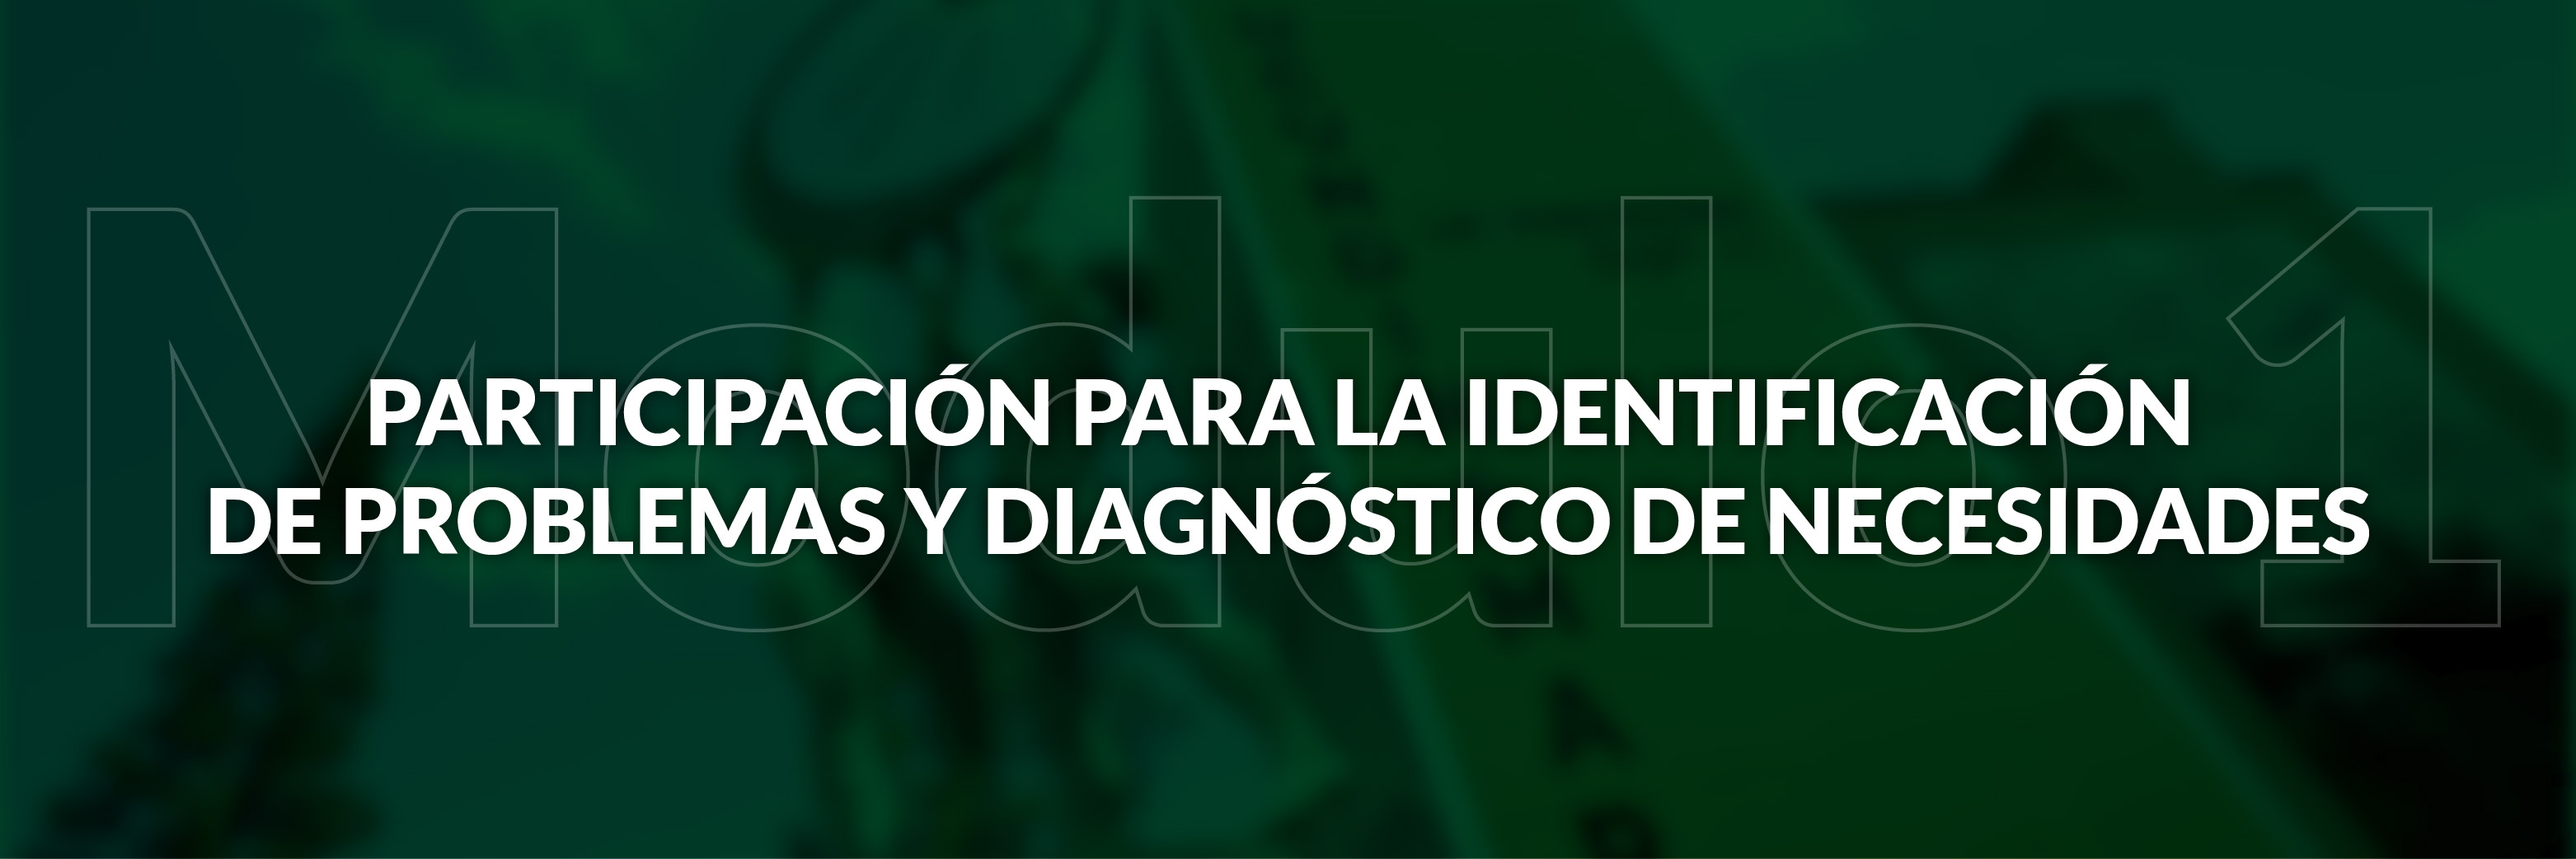 Modulo 1: Participación para la identificación de problemas y diagnóstico de necesidades